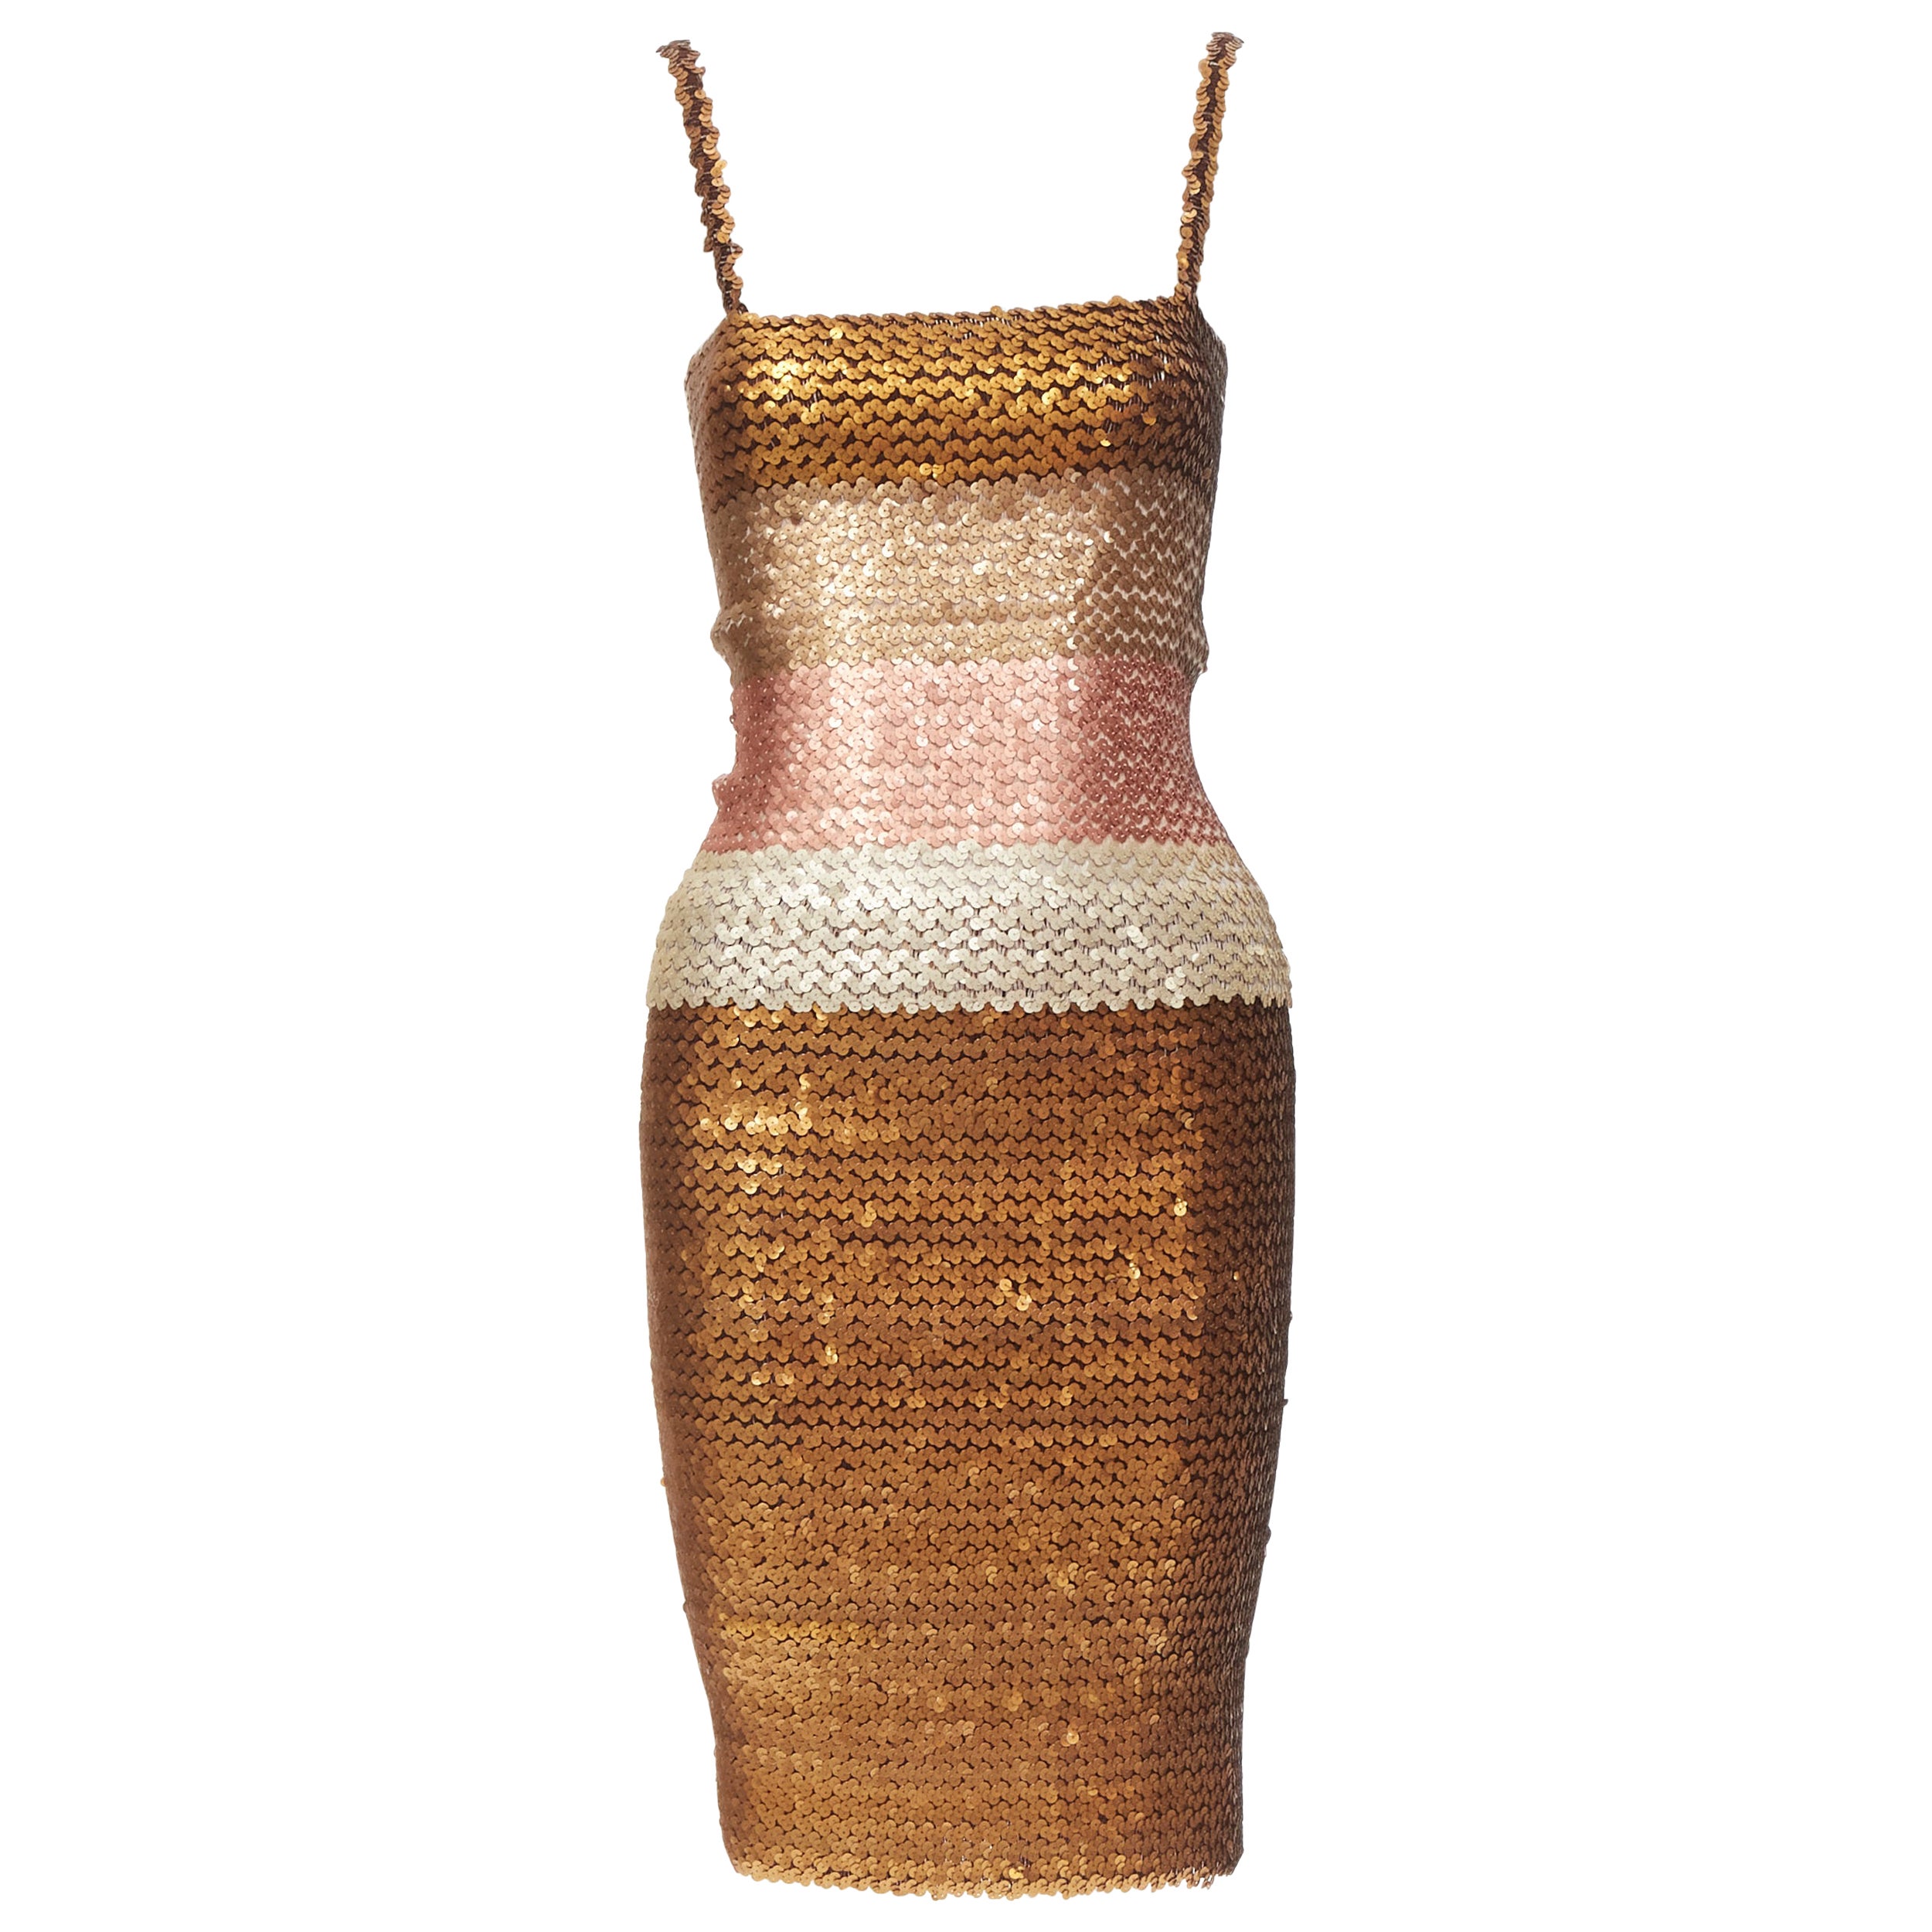 RITMO DI PERLA Vintage ombre gold sequins cami top pencil skirt dress IT44 M